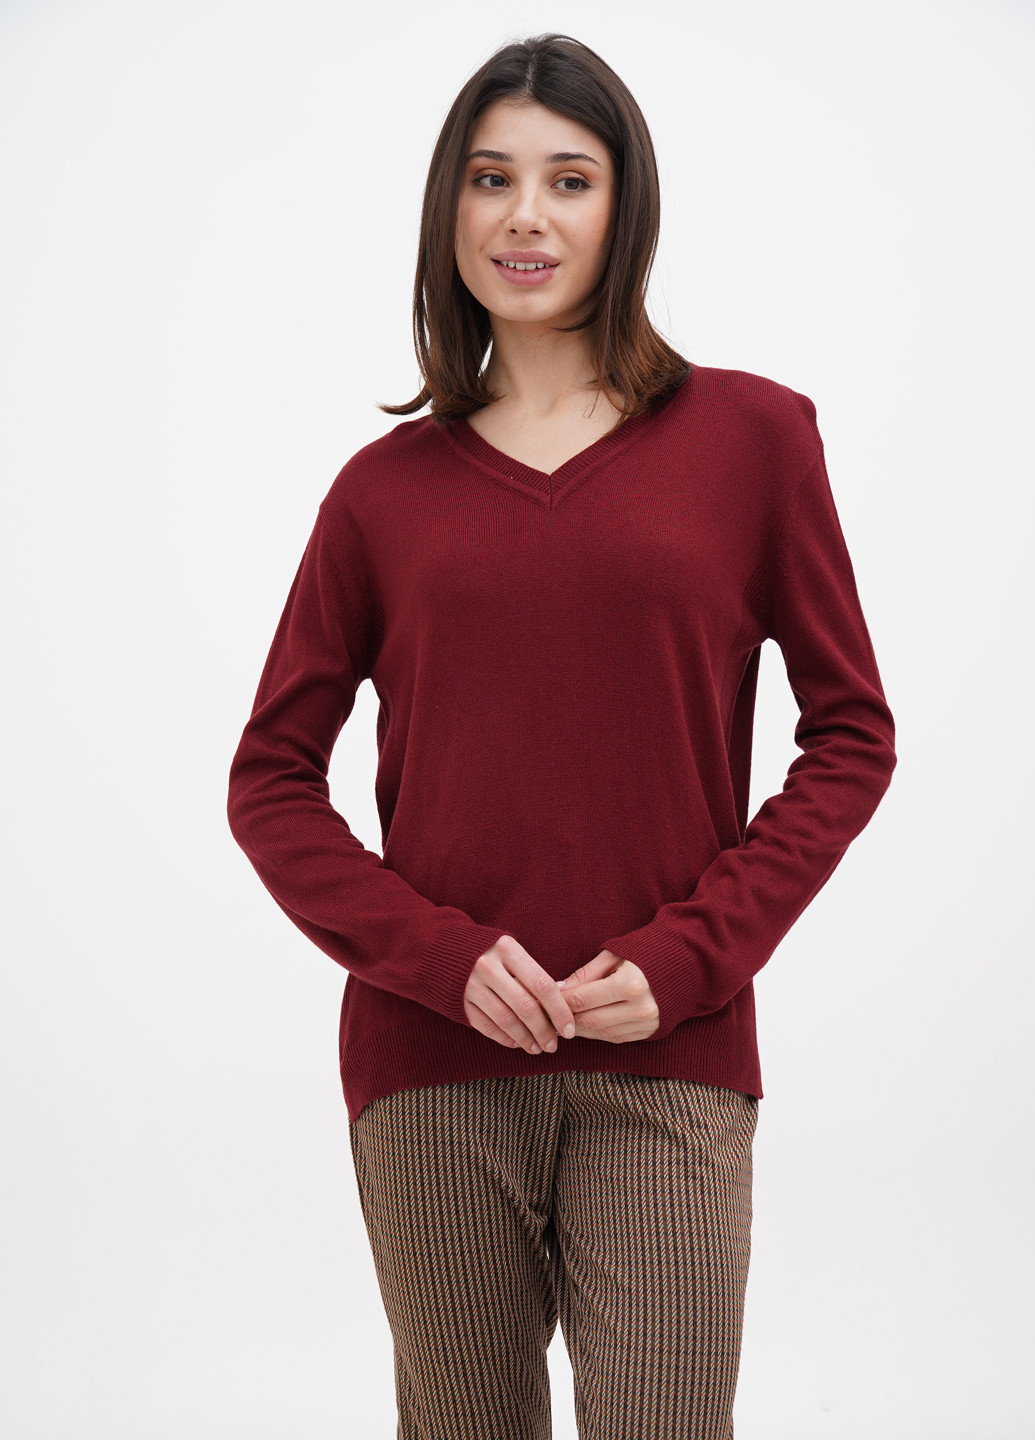 Бордовый демисезонный пуловер пуловер Terranova